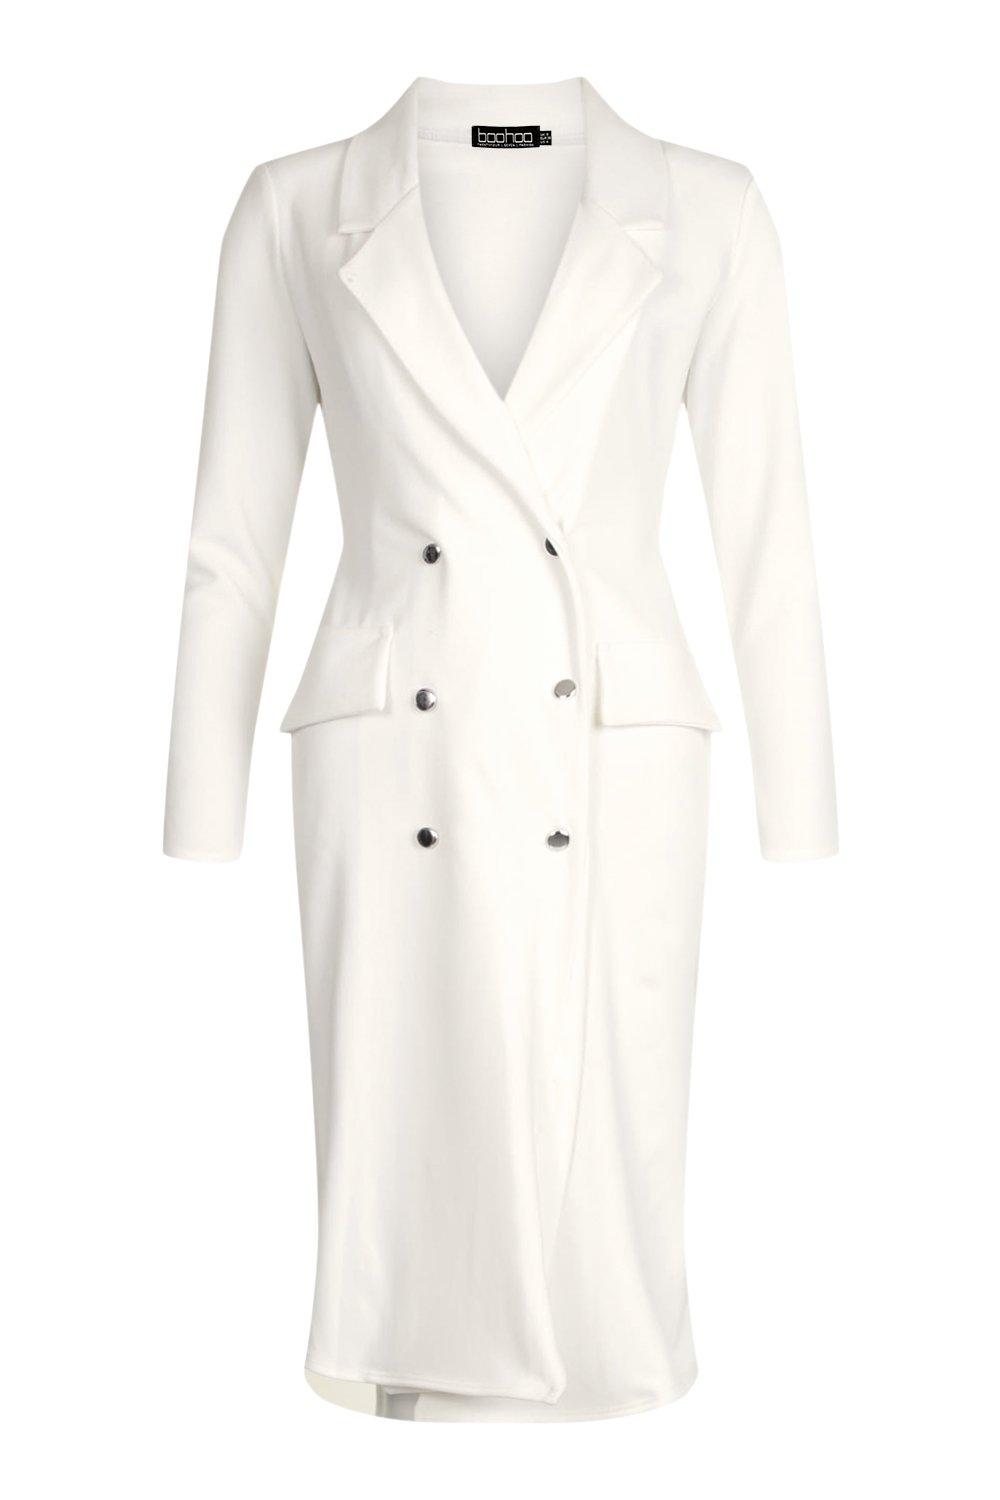 white blazer midi dress